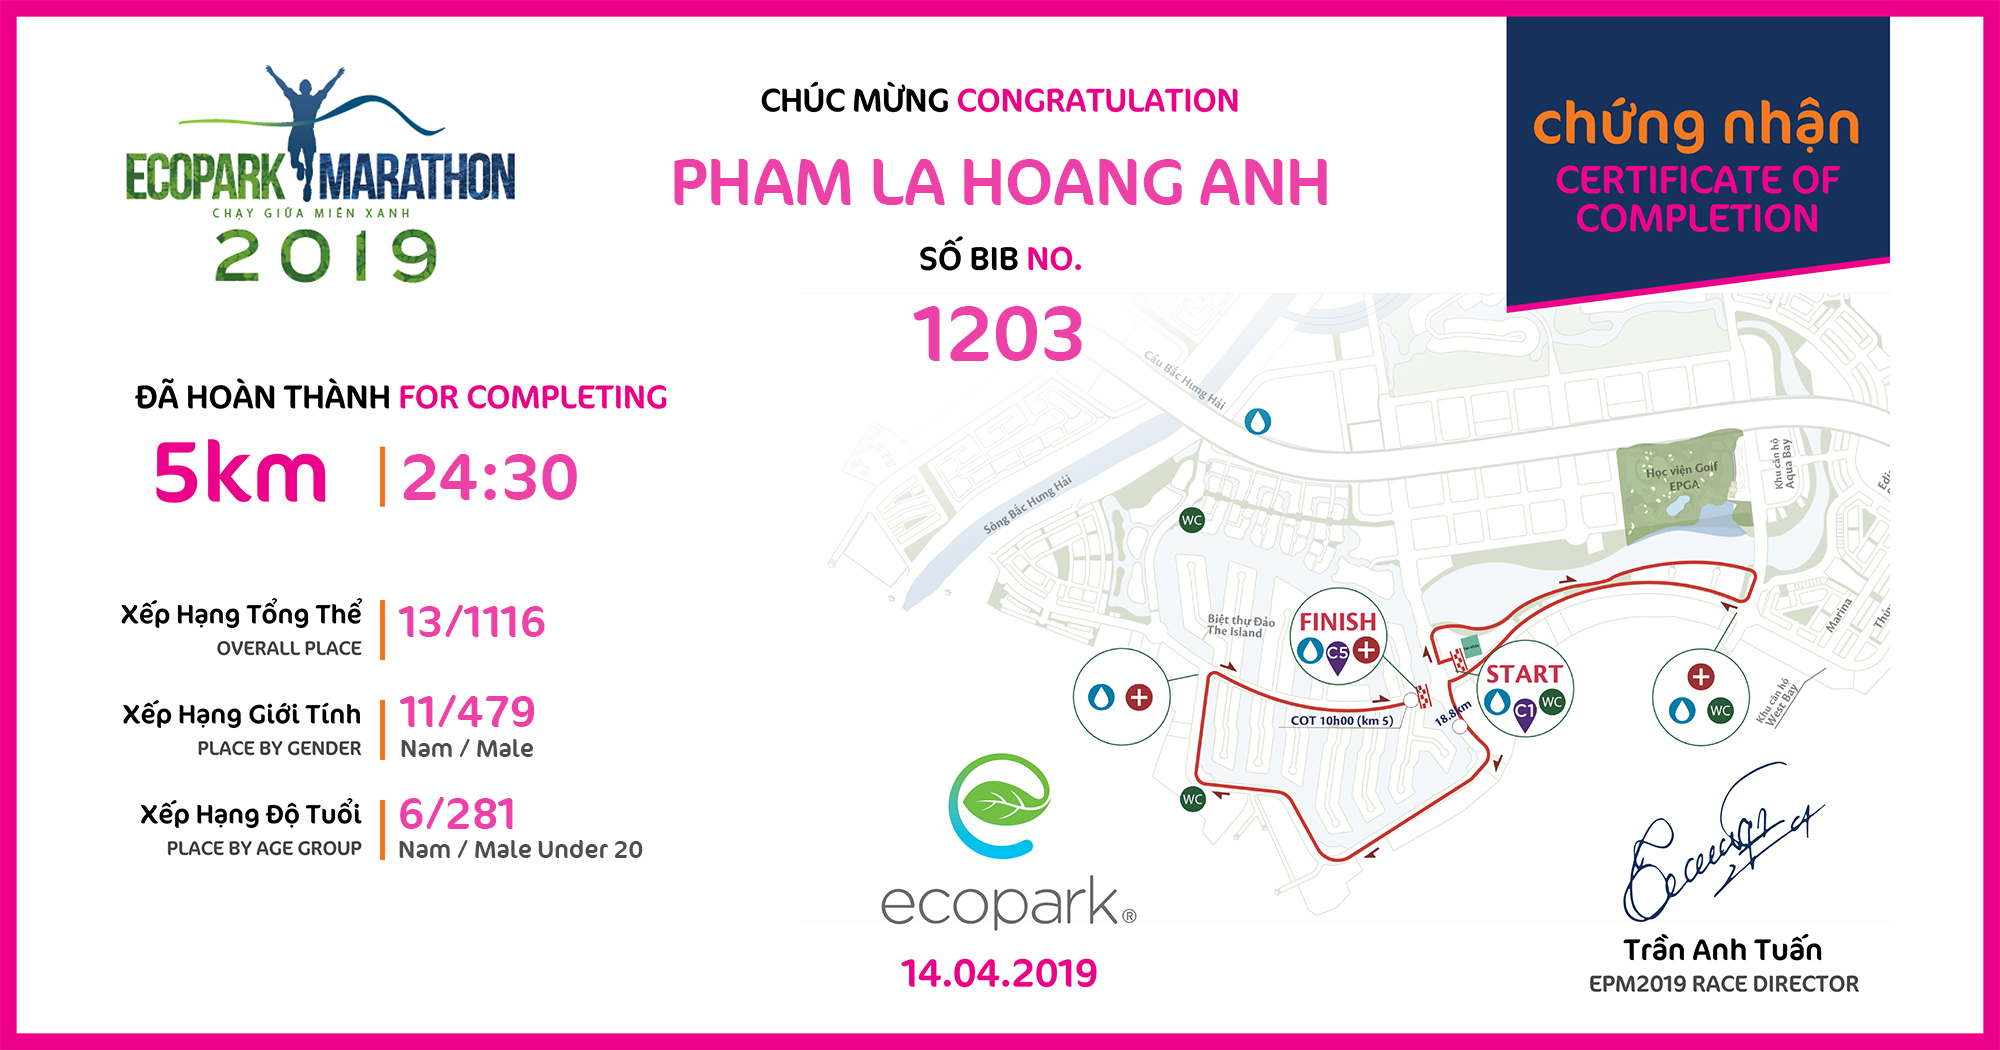 1203 - Pham La Hoang Anh